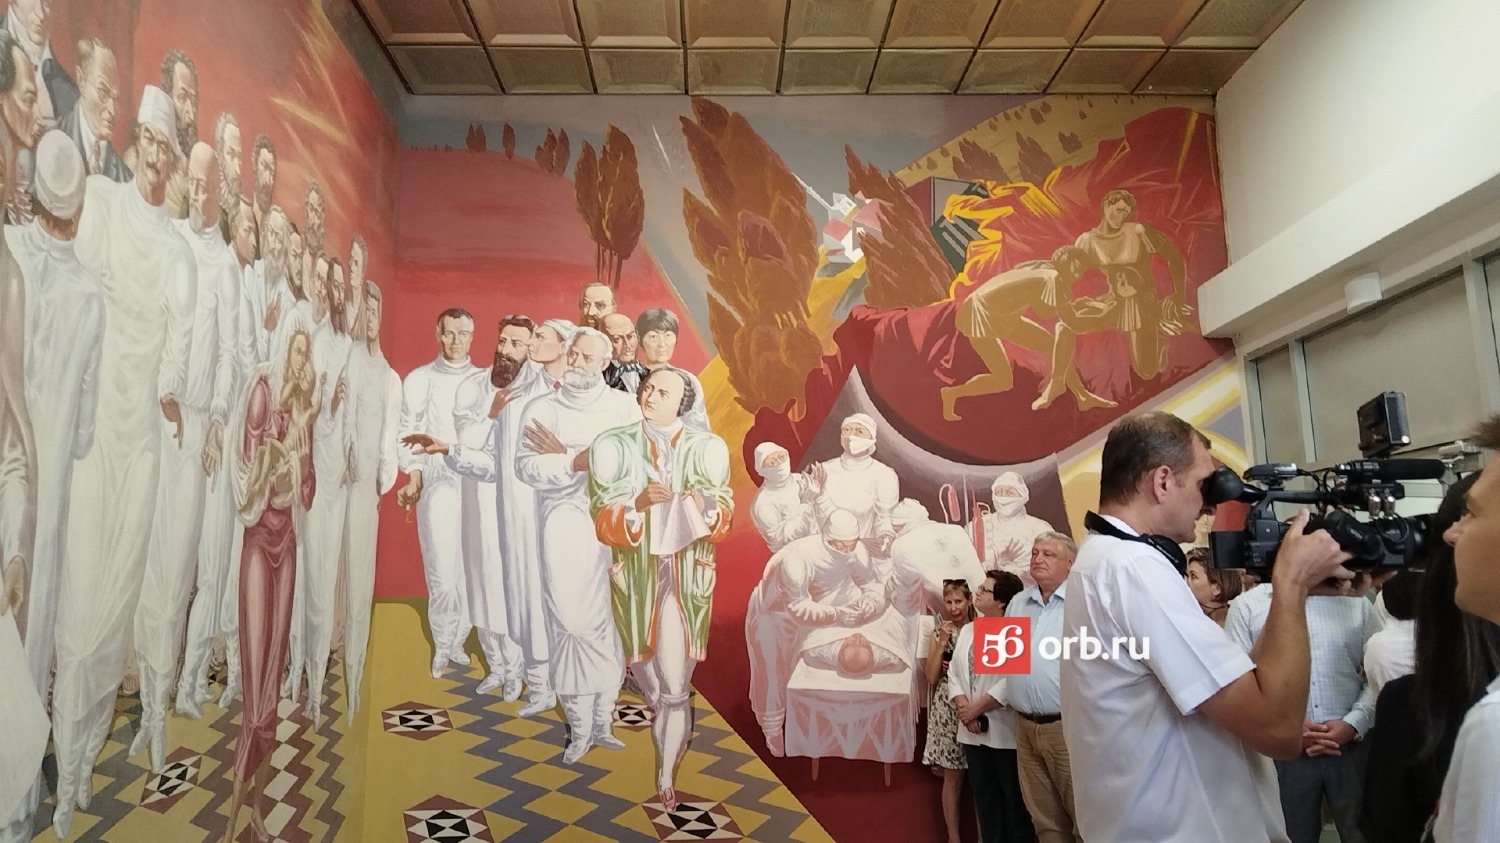 В одном из помещений поликлиники Оренбурга восстановили старую фреску